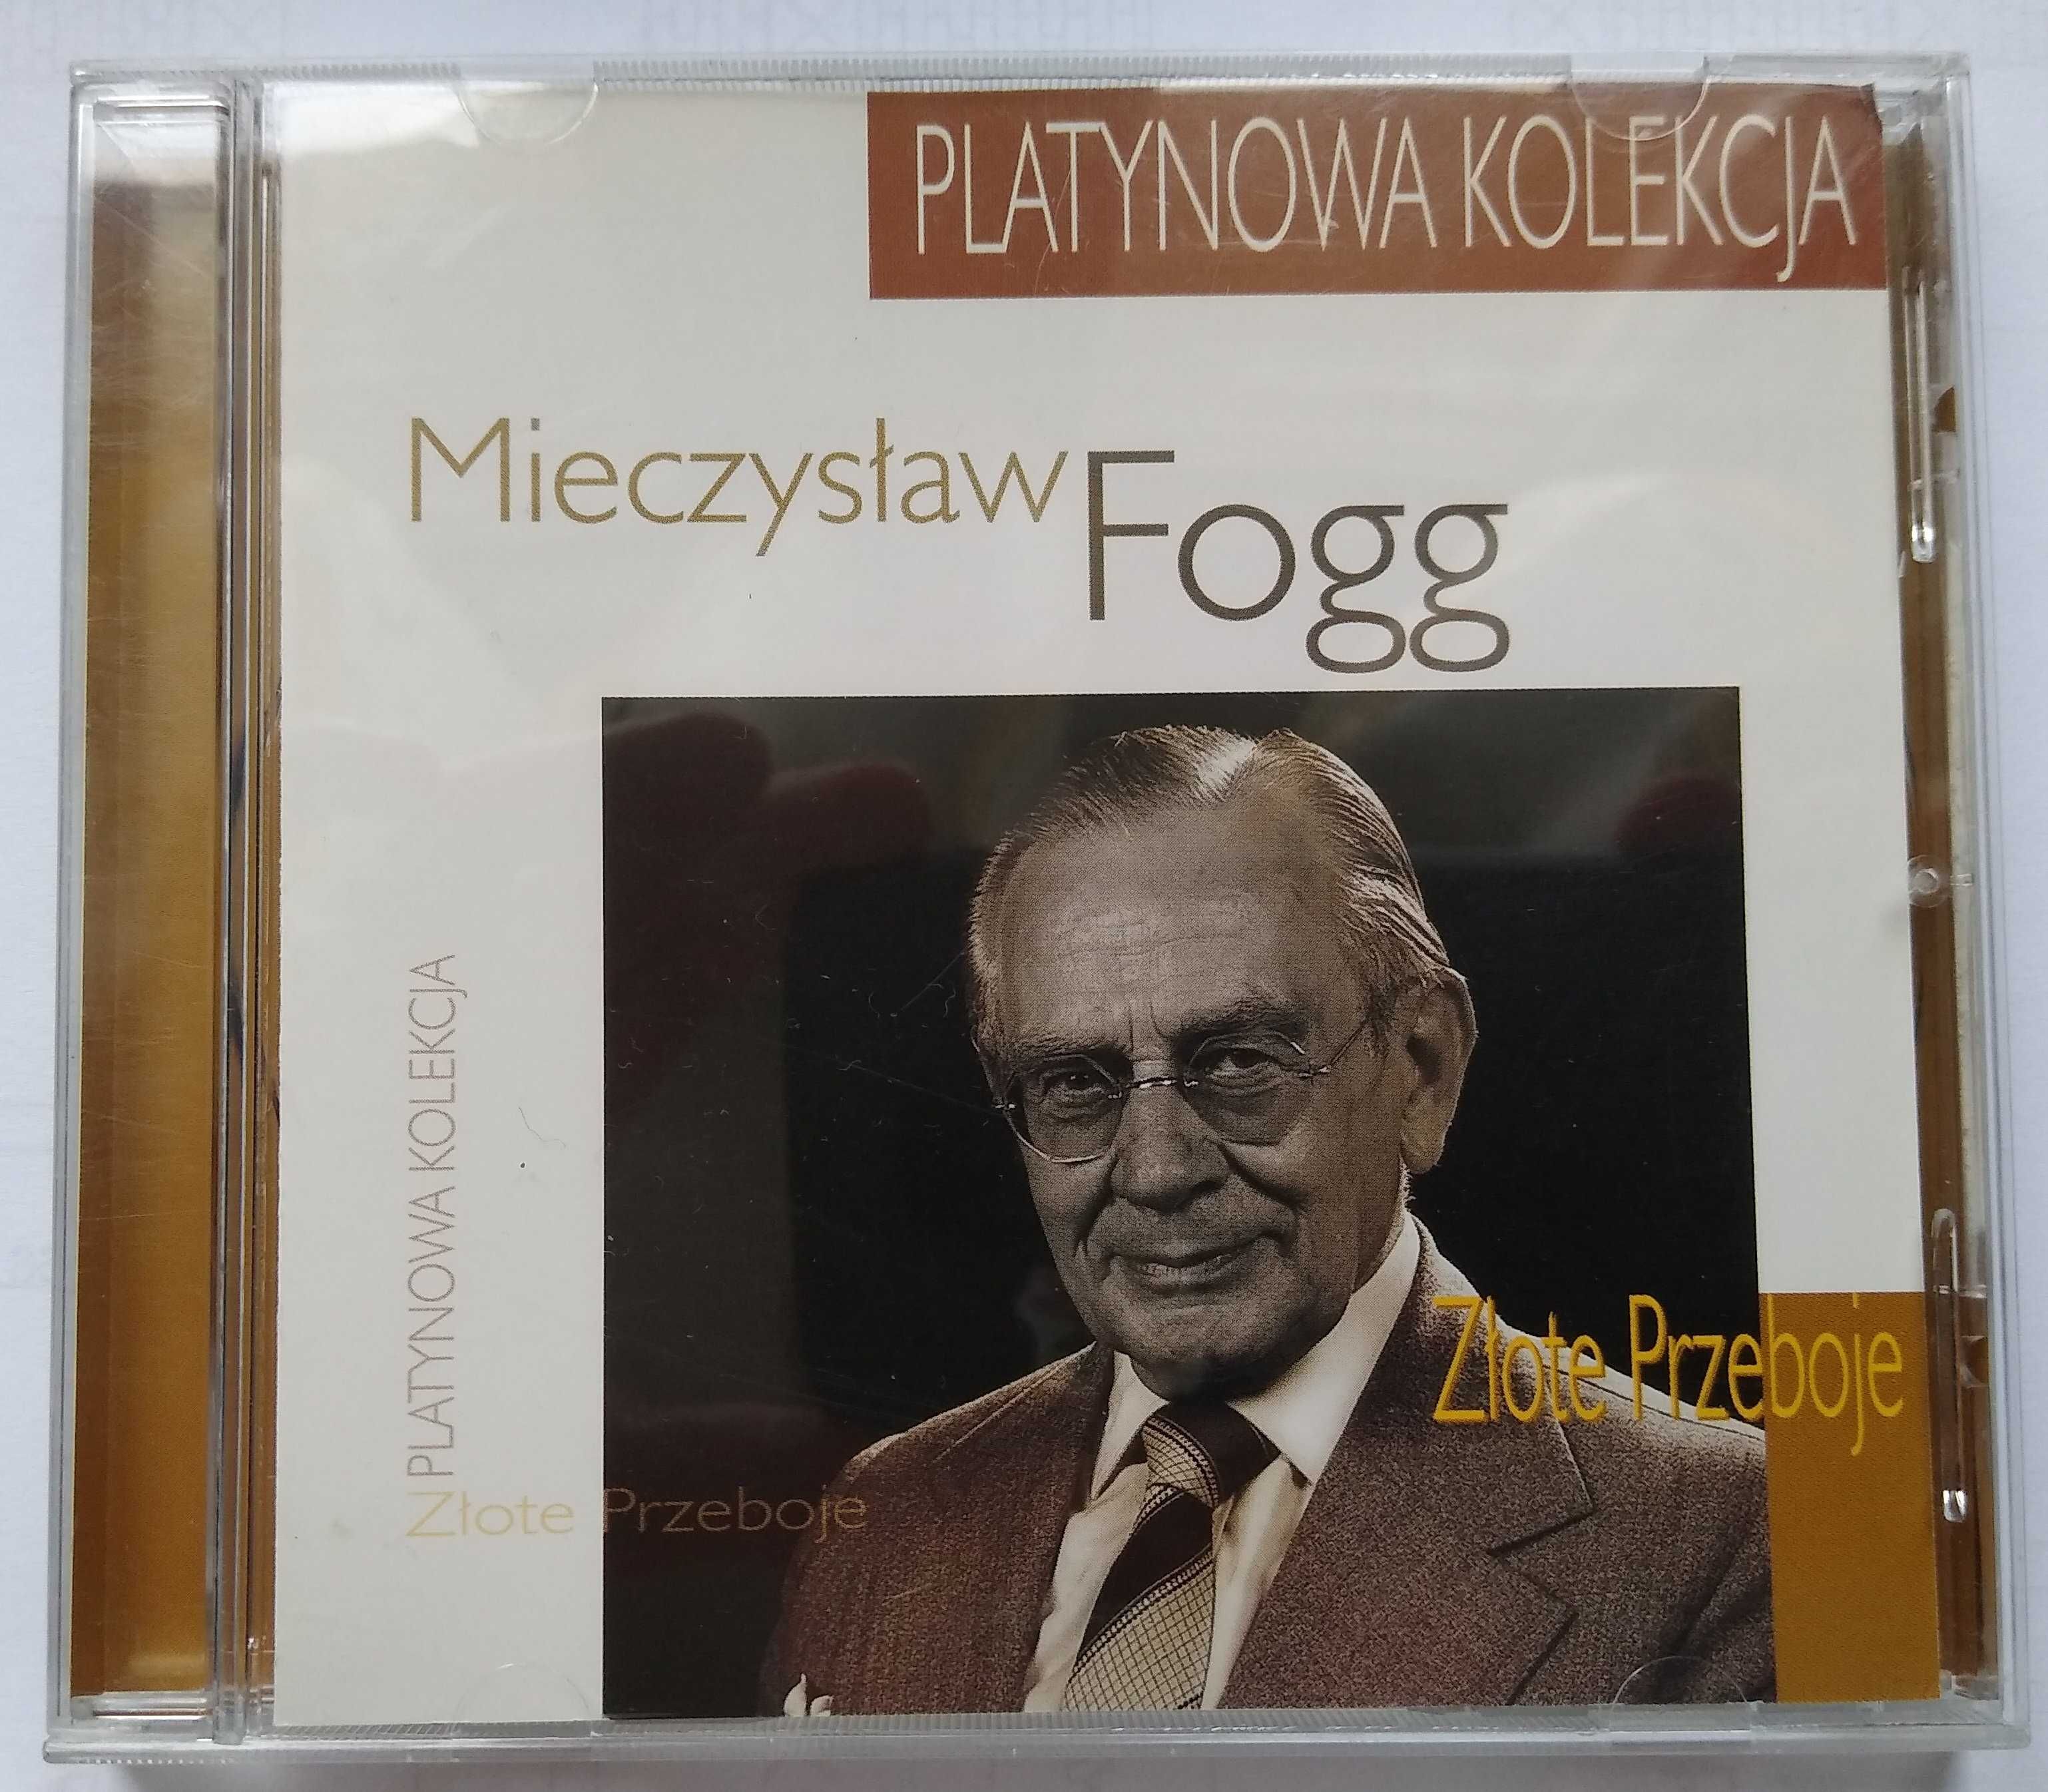 Płyta CD Mieczysław Fogg Platynowa Kolekcja Złote przeboje